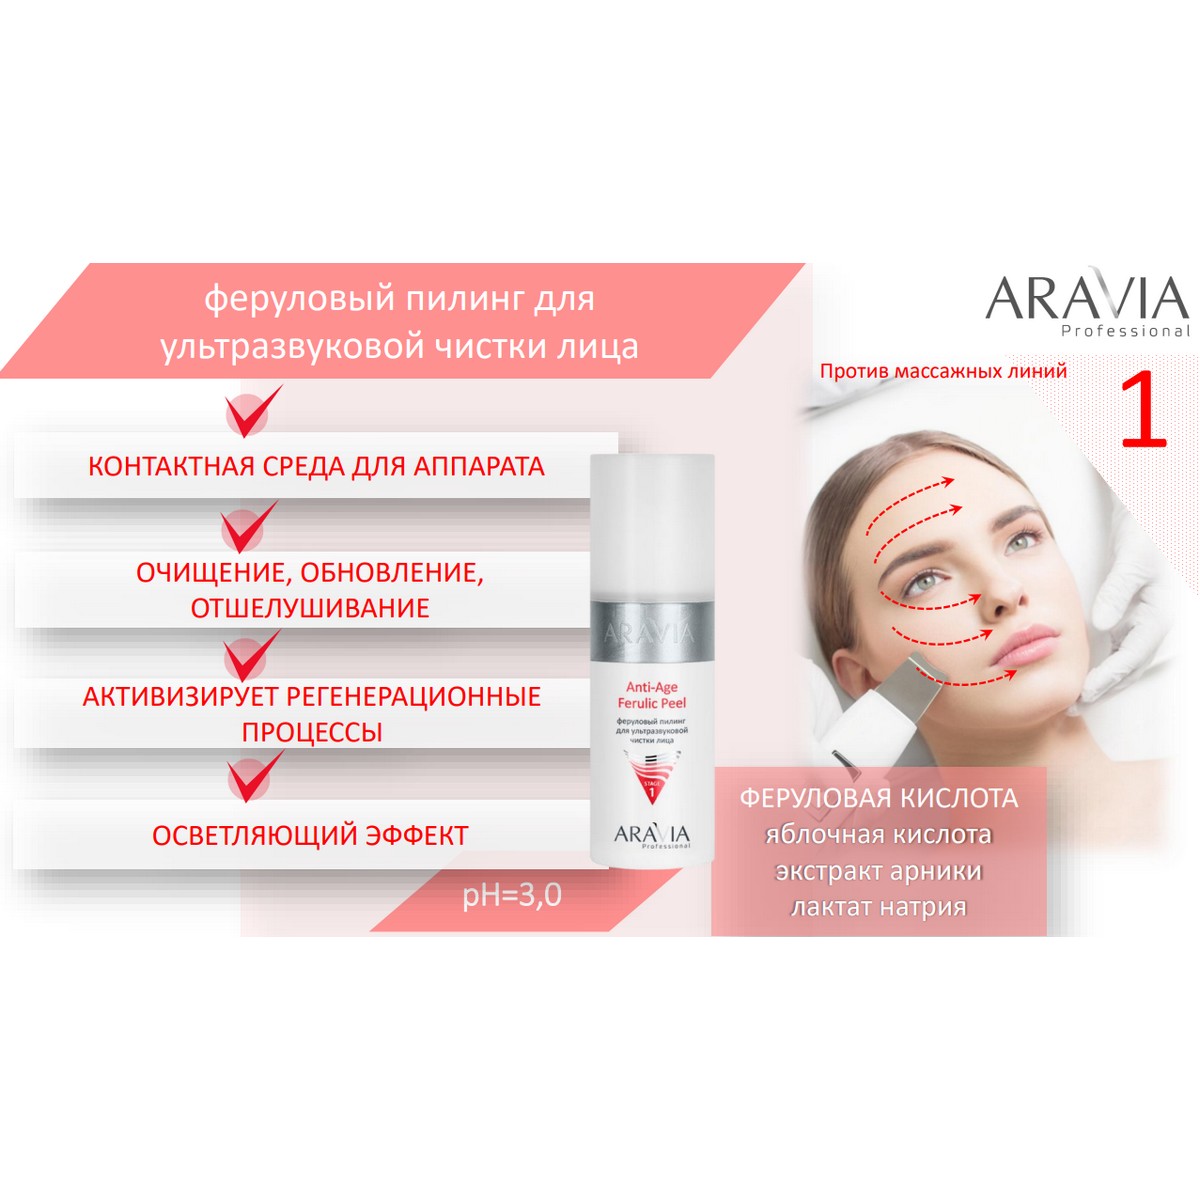 орг13%!!!!ARAVIA Professional Профессиональная процедура для лица «Аппаратная косметология» / Anti-Age, 150 мл x 3